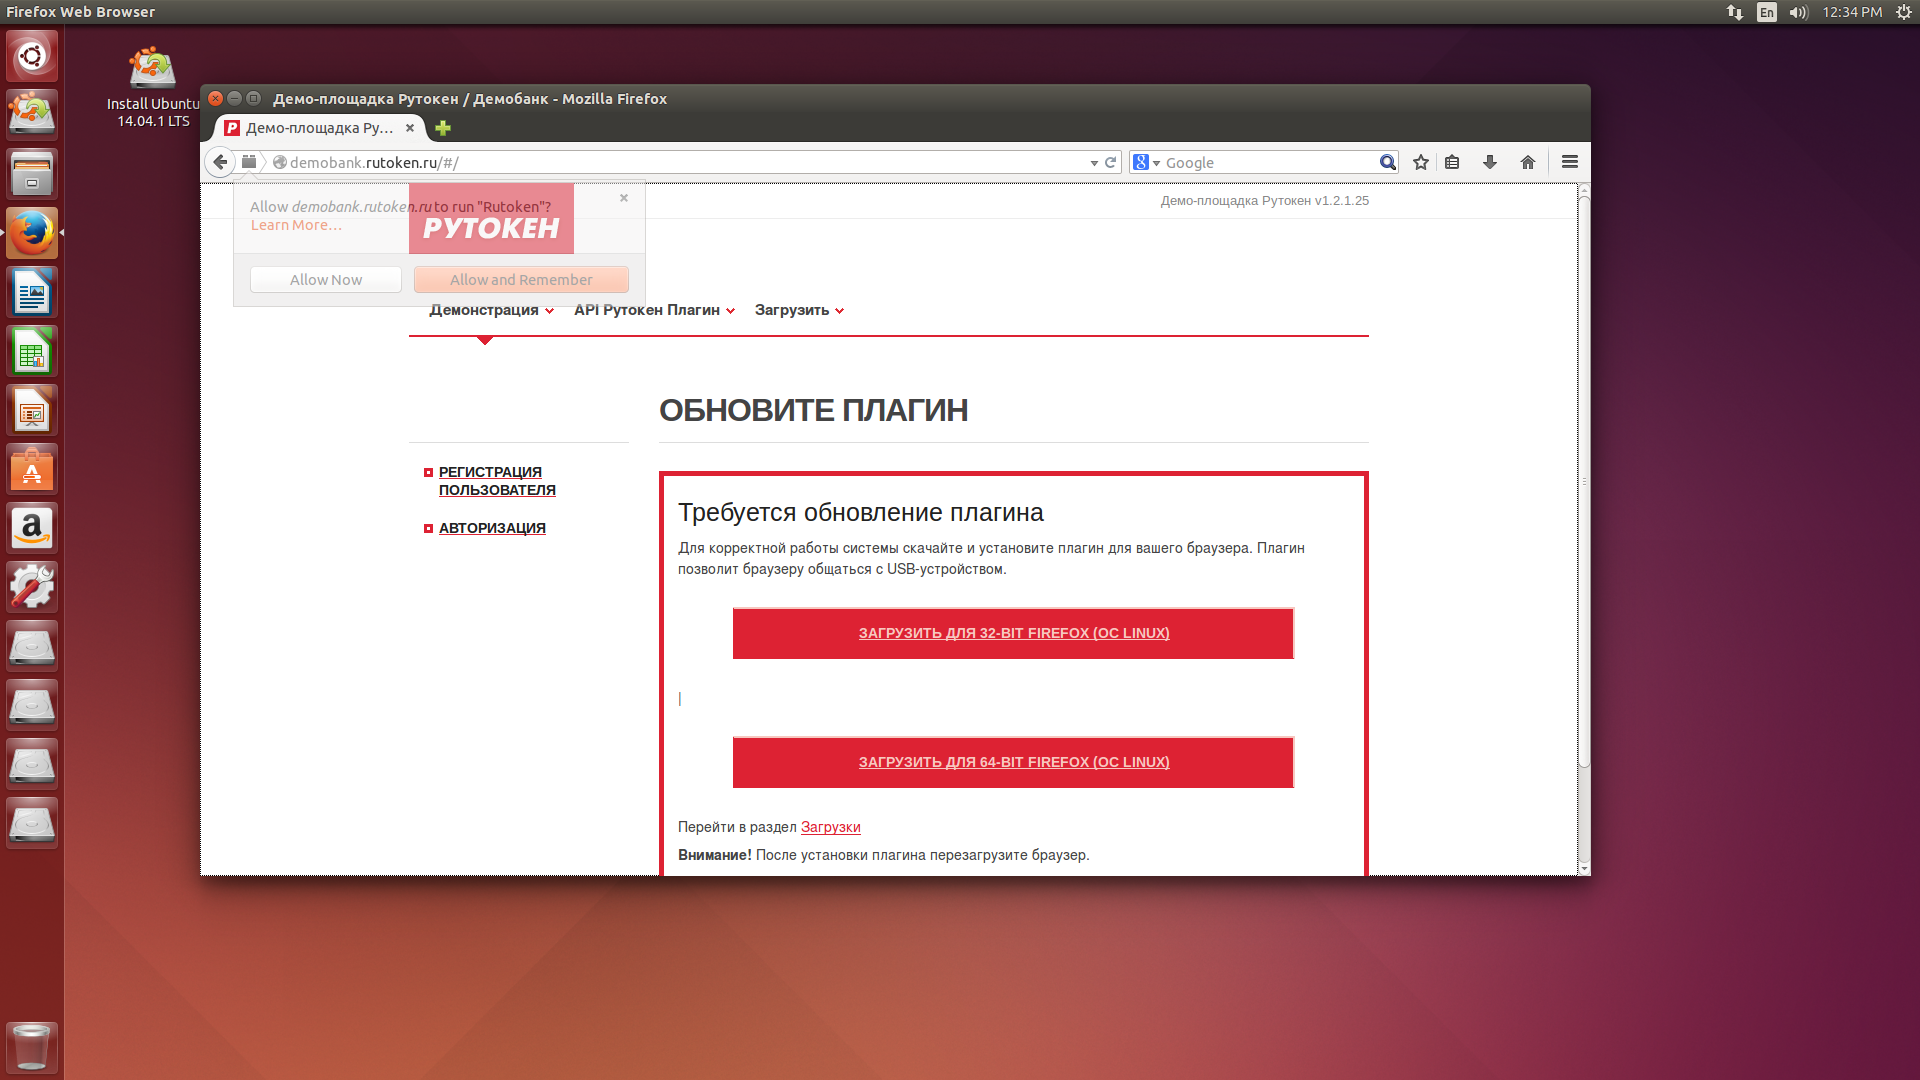 Электронная подпись в доверенной среде на базe загрузочной Ubuntu 14.04 LTS и Рутокен ЭЦП Flash - 5